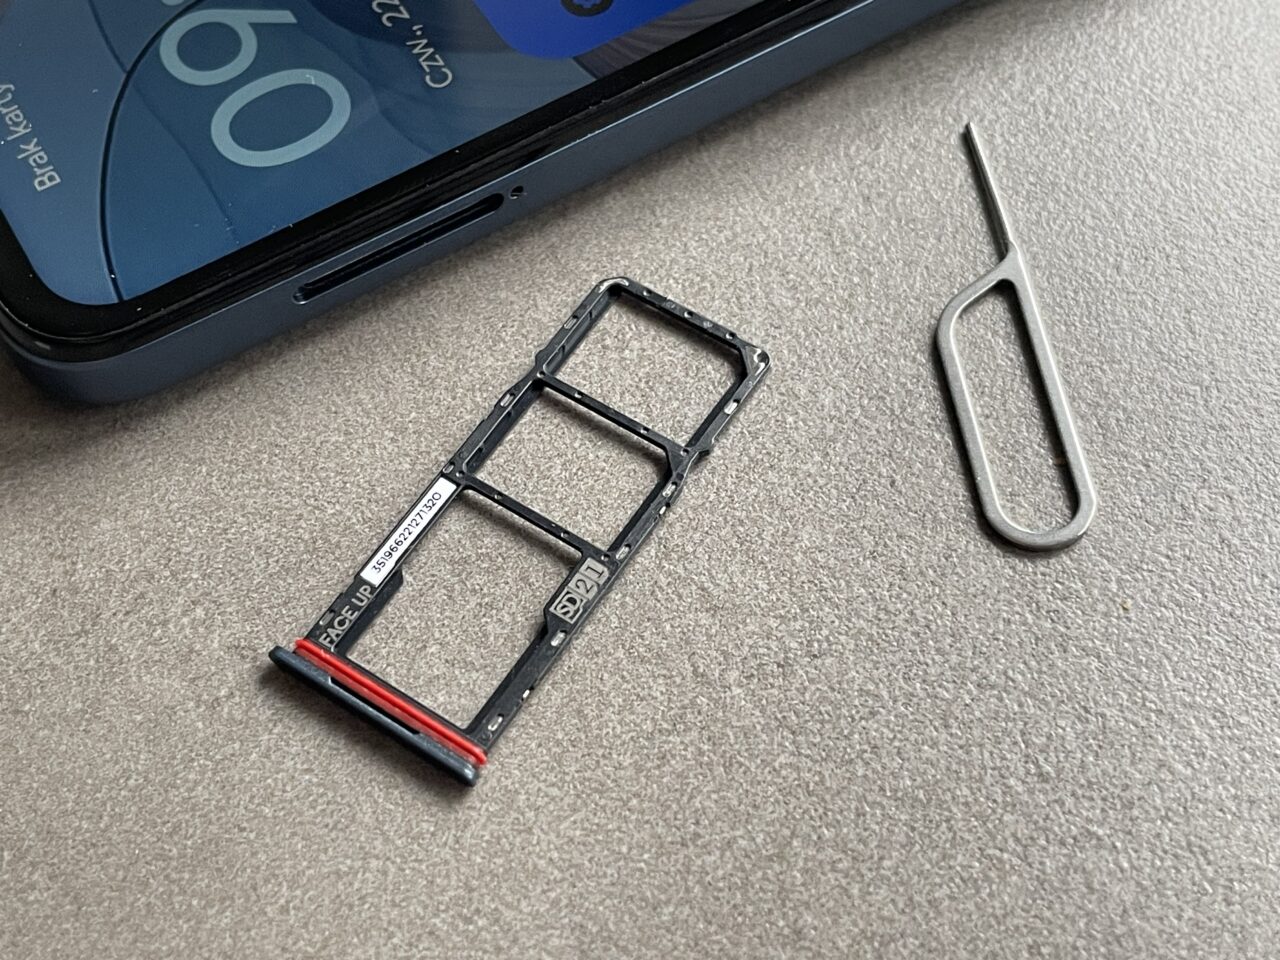 Tacka obok dwóch obiektów: plastikowa tacka SIM z telefonu komórkowego i metalowe narzędzie do wyjmowania tacki SIM, na górze zamazanego ekranu smartfona.